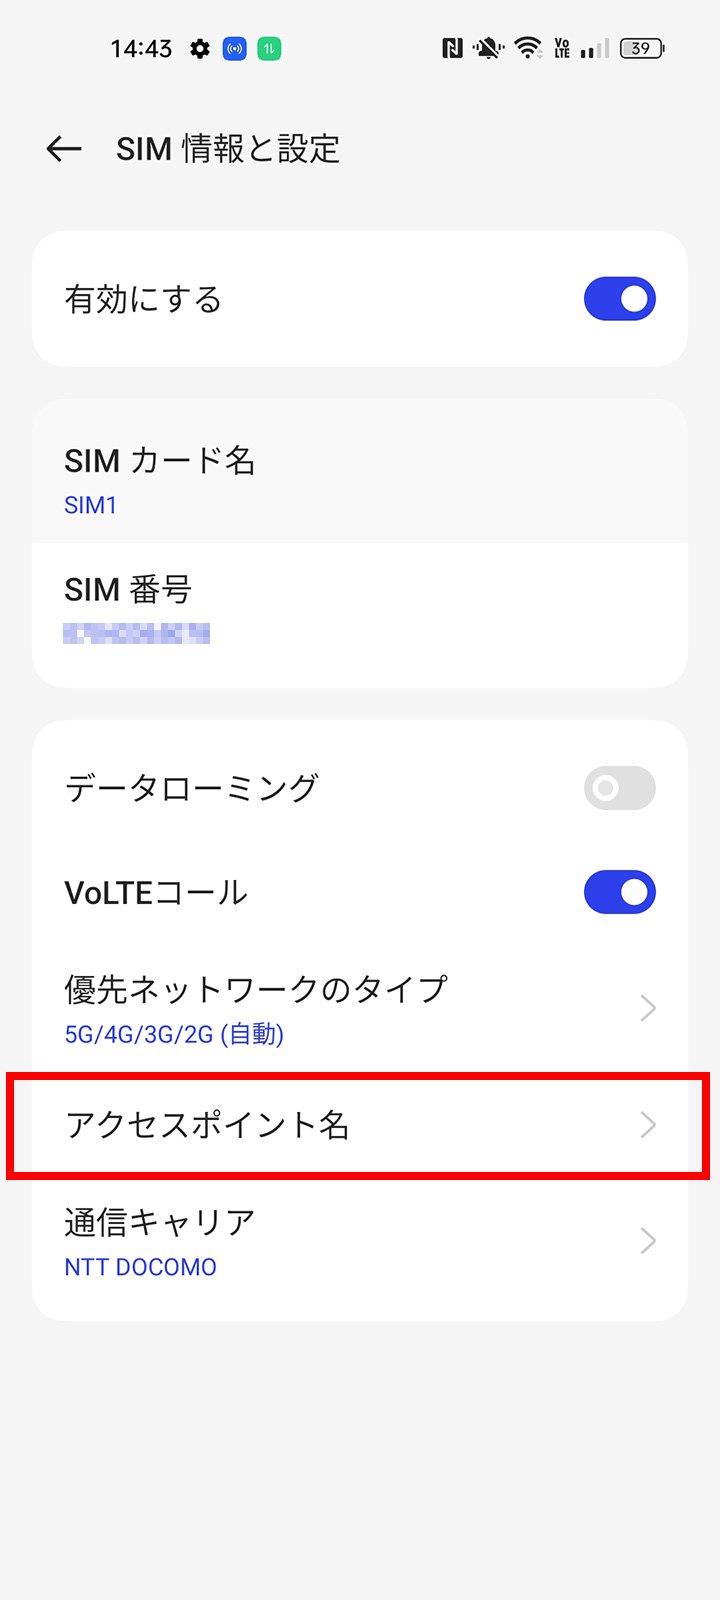 説明図：SIM情報と設定画面の「アクセスポイント名」選択位置